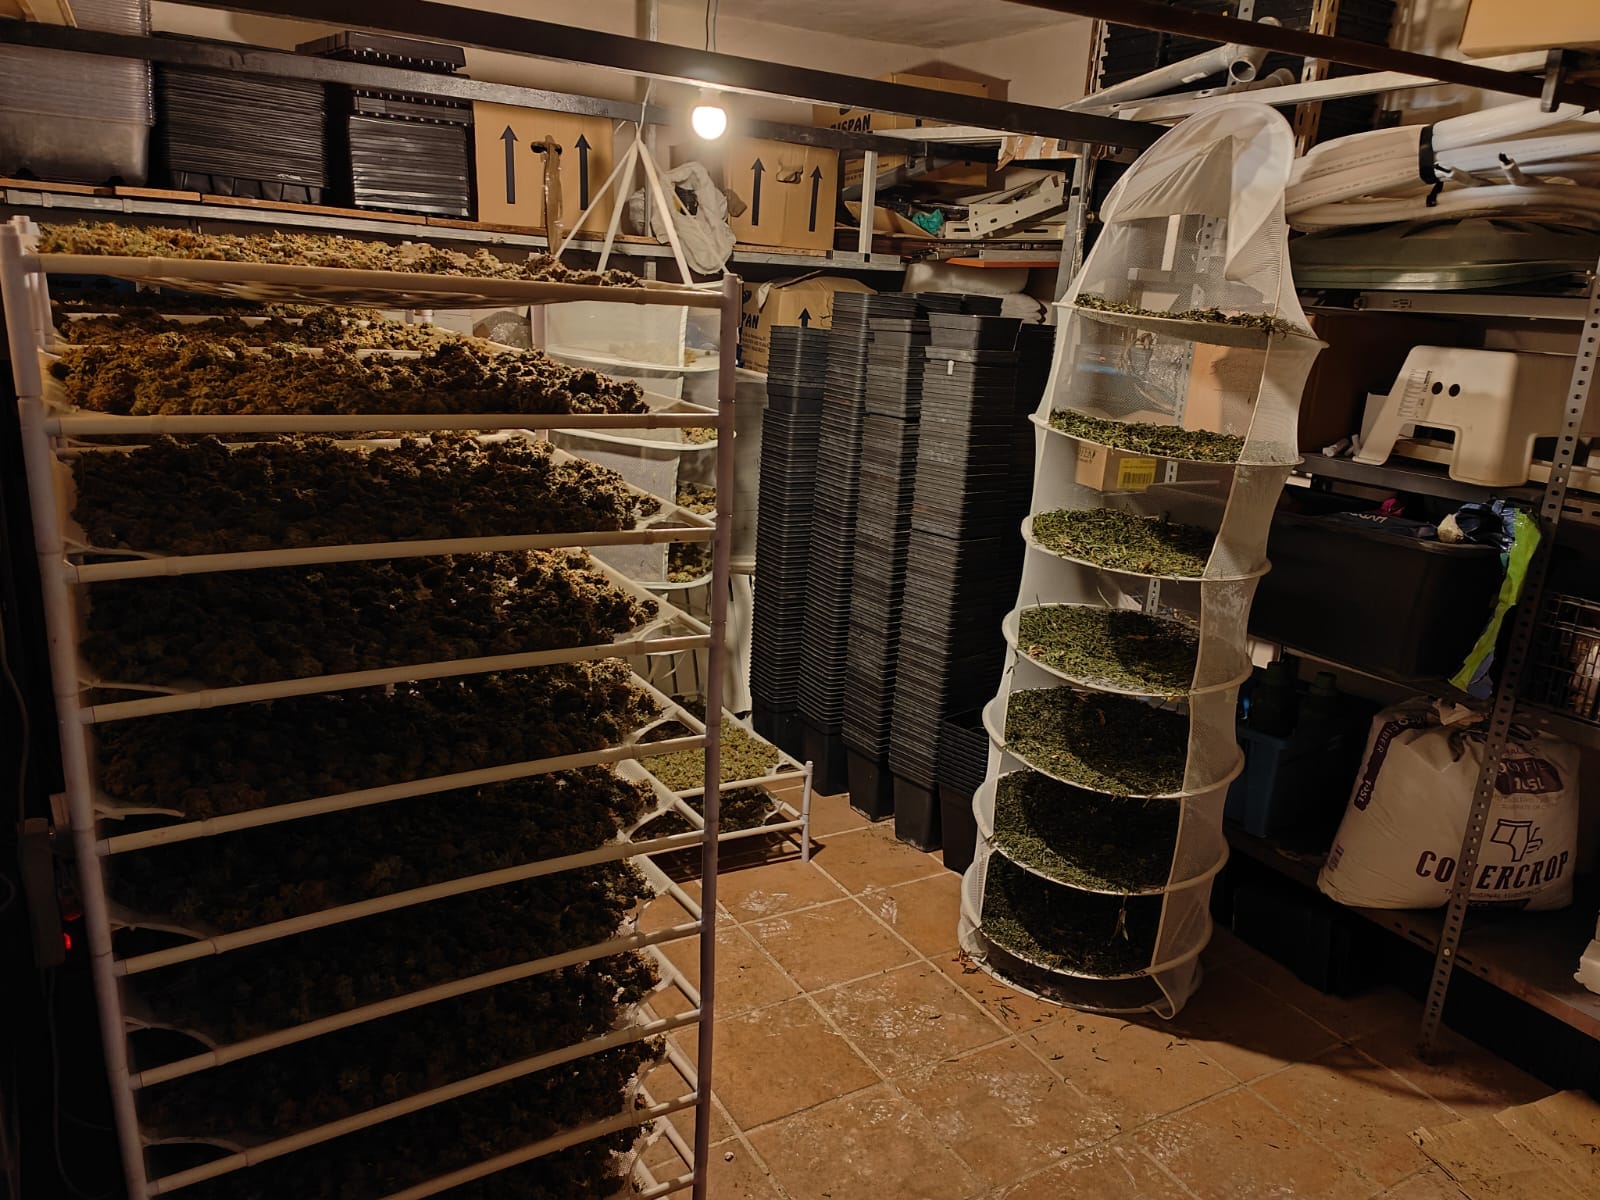 Operación Daisy: Desarticulan red de cultivo de marihuana en Cabanillas de la Sierra